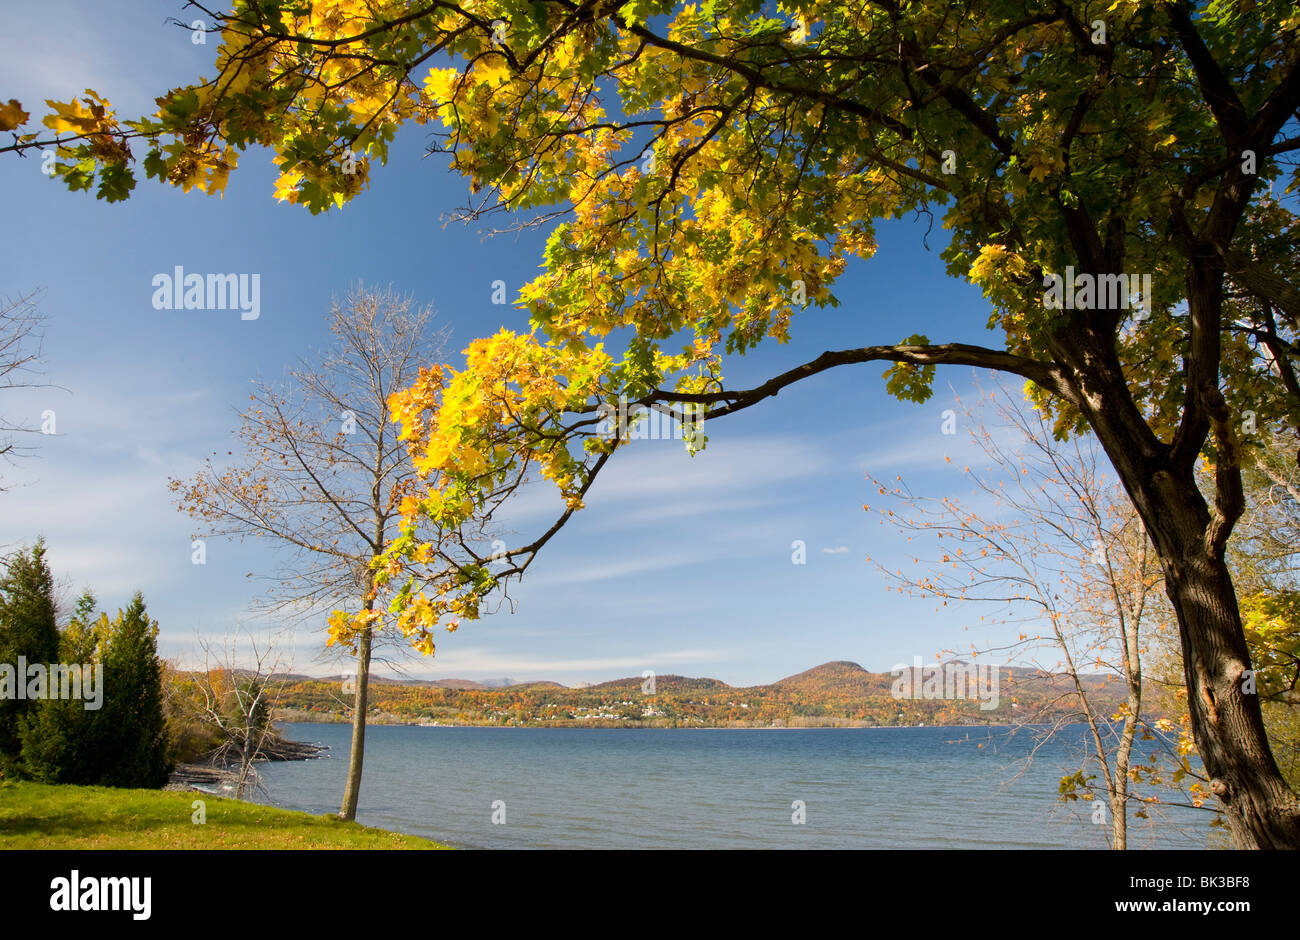 Une vue sur le lac Champlain à l'automne de Crown Point, New York, la Nouvelle-Angleterre, États-Unis d'Amérique, Amérique du Nord Banque D'Images